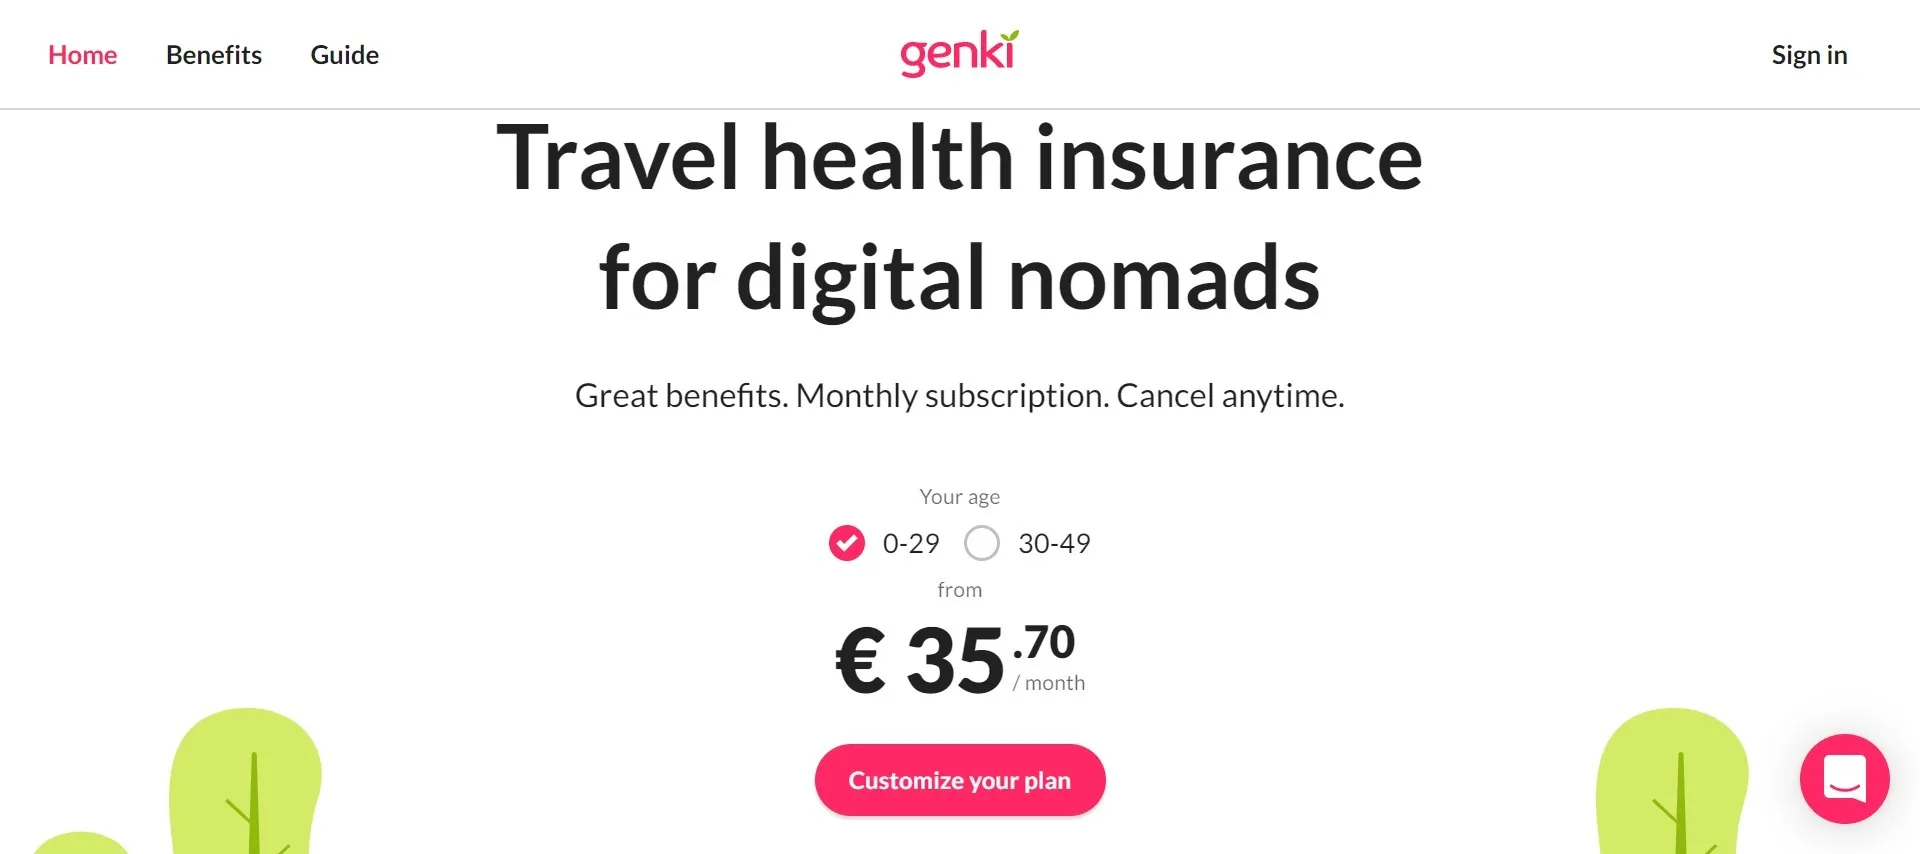 Genki insurance for travelers